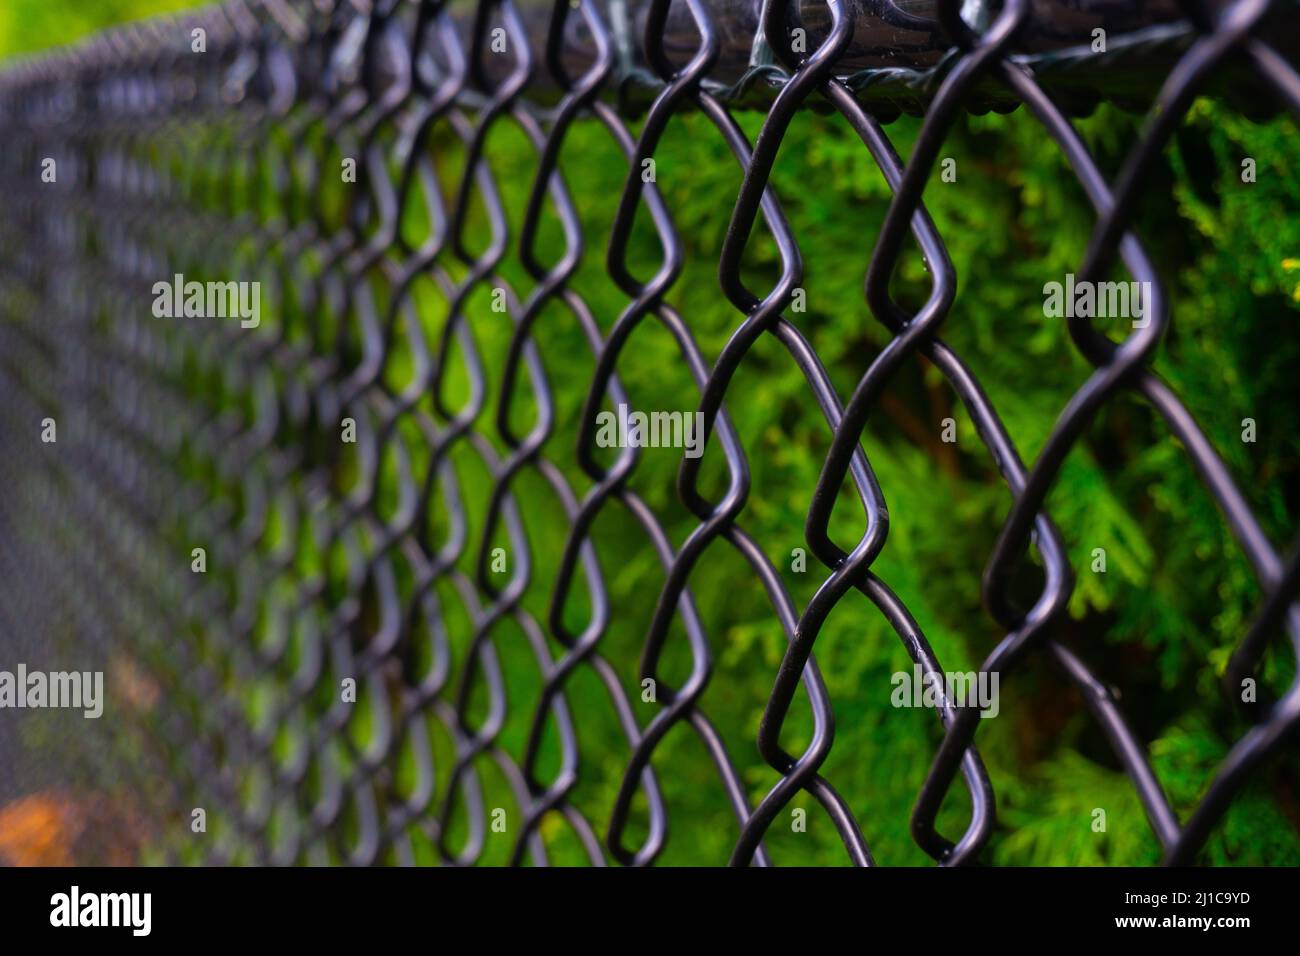 Une clôture en chaînette noire photographiée d'un point de vue créatif pour donner la profondeur de l'image. Banque D'Images